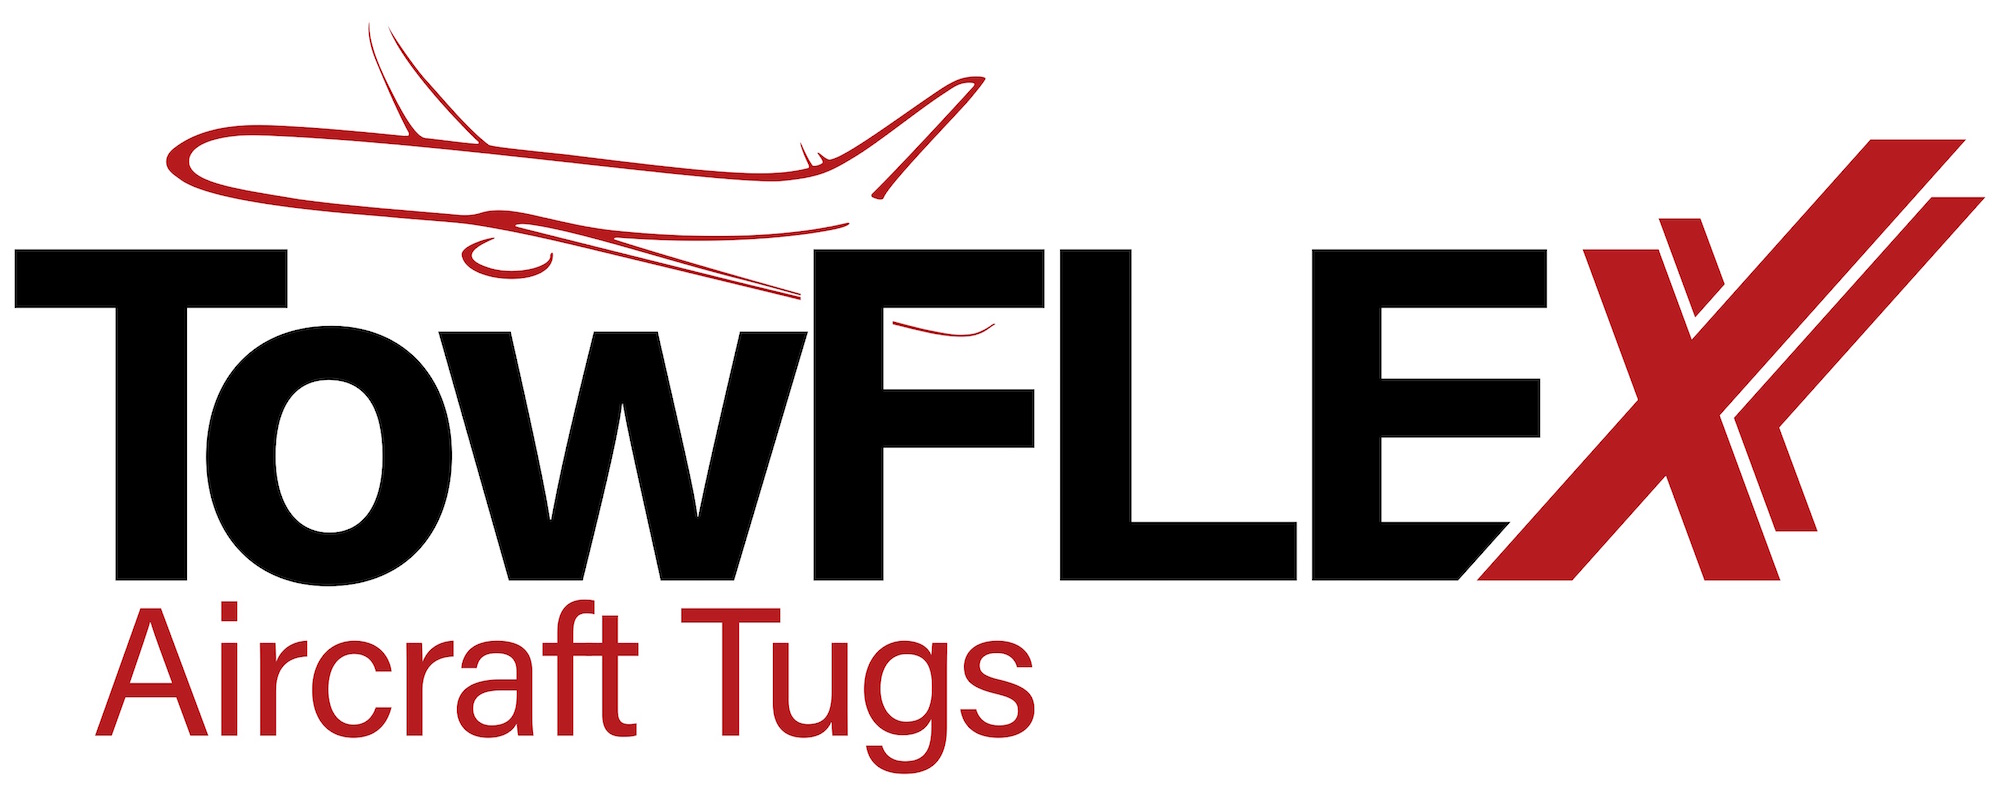 TowFLEXX Aircraft Tugs